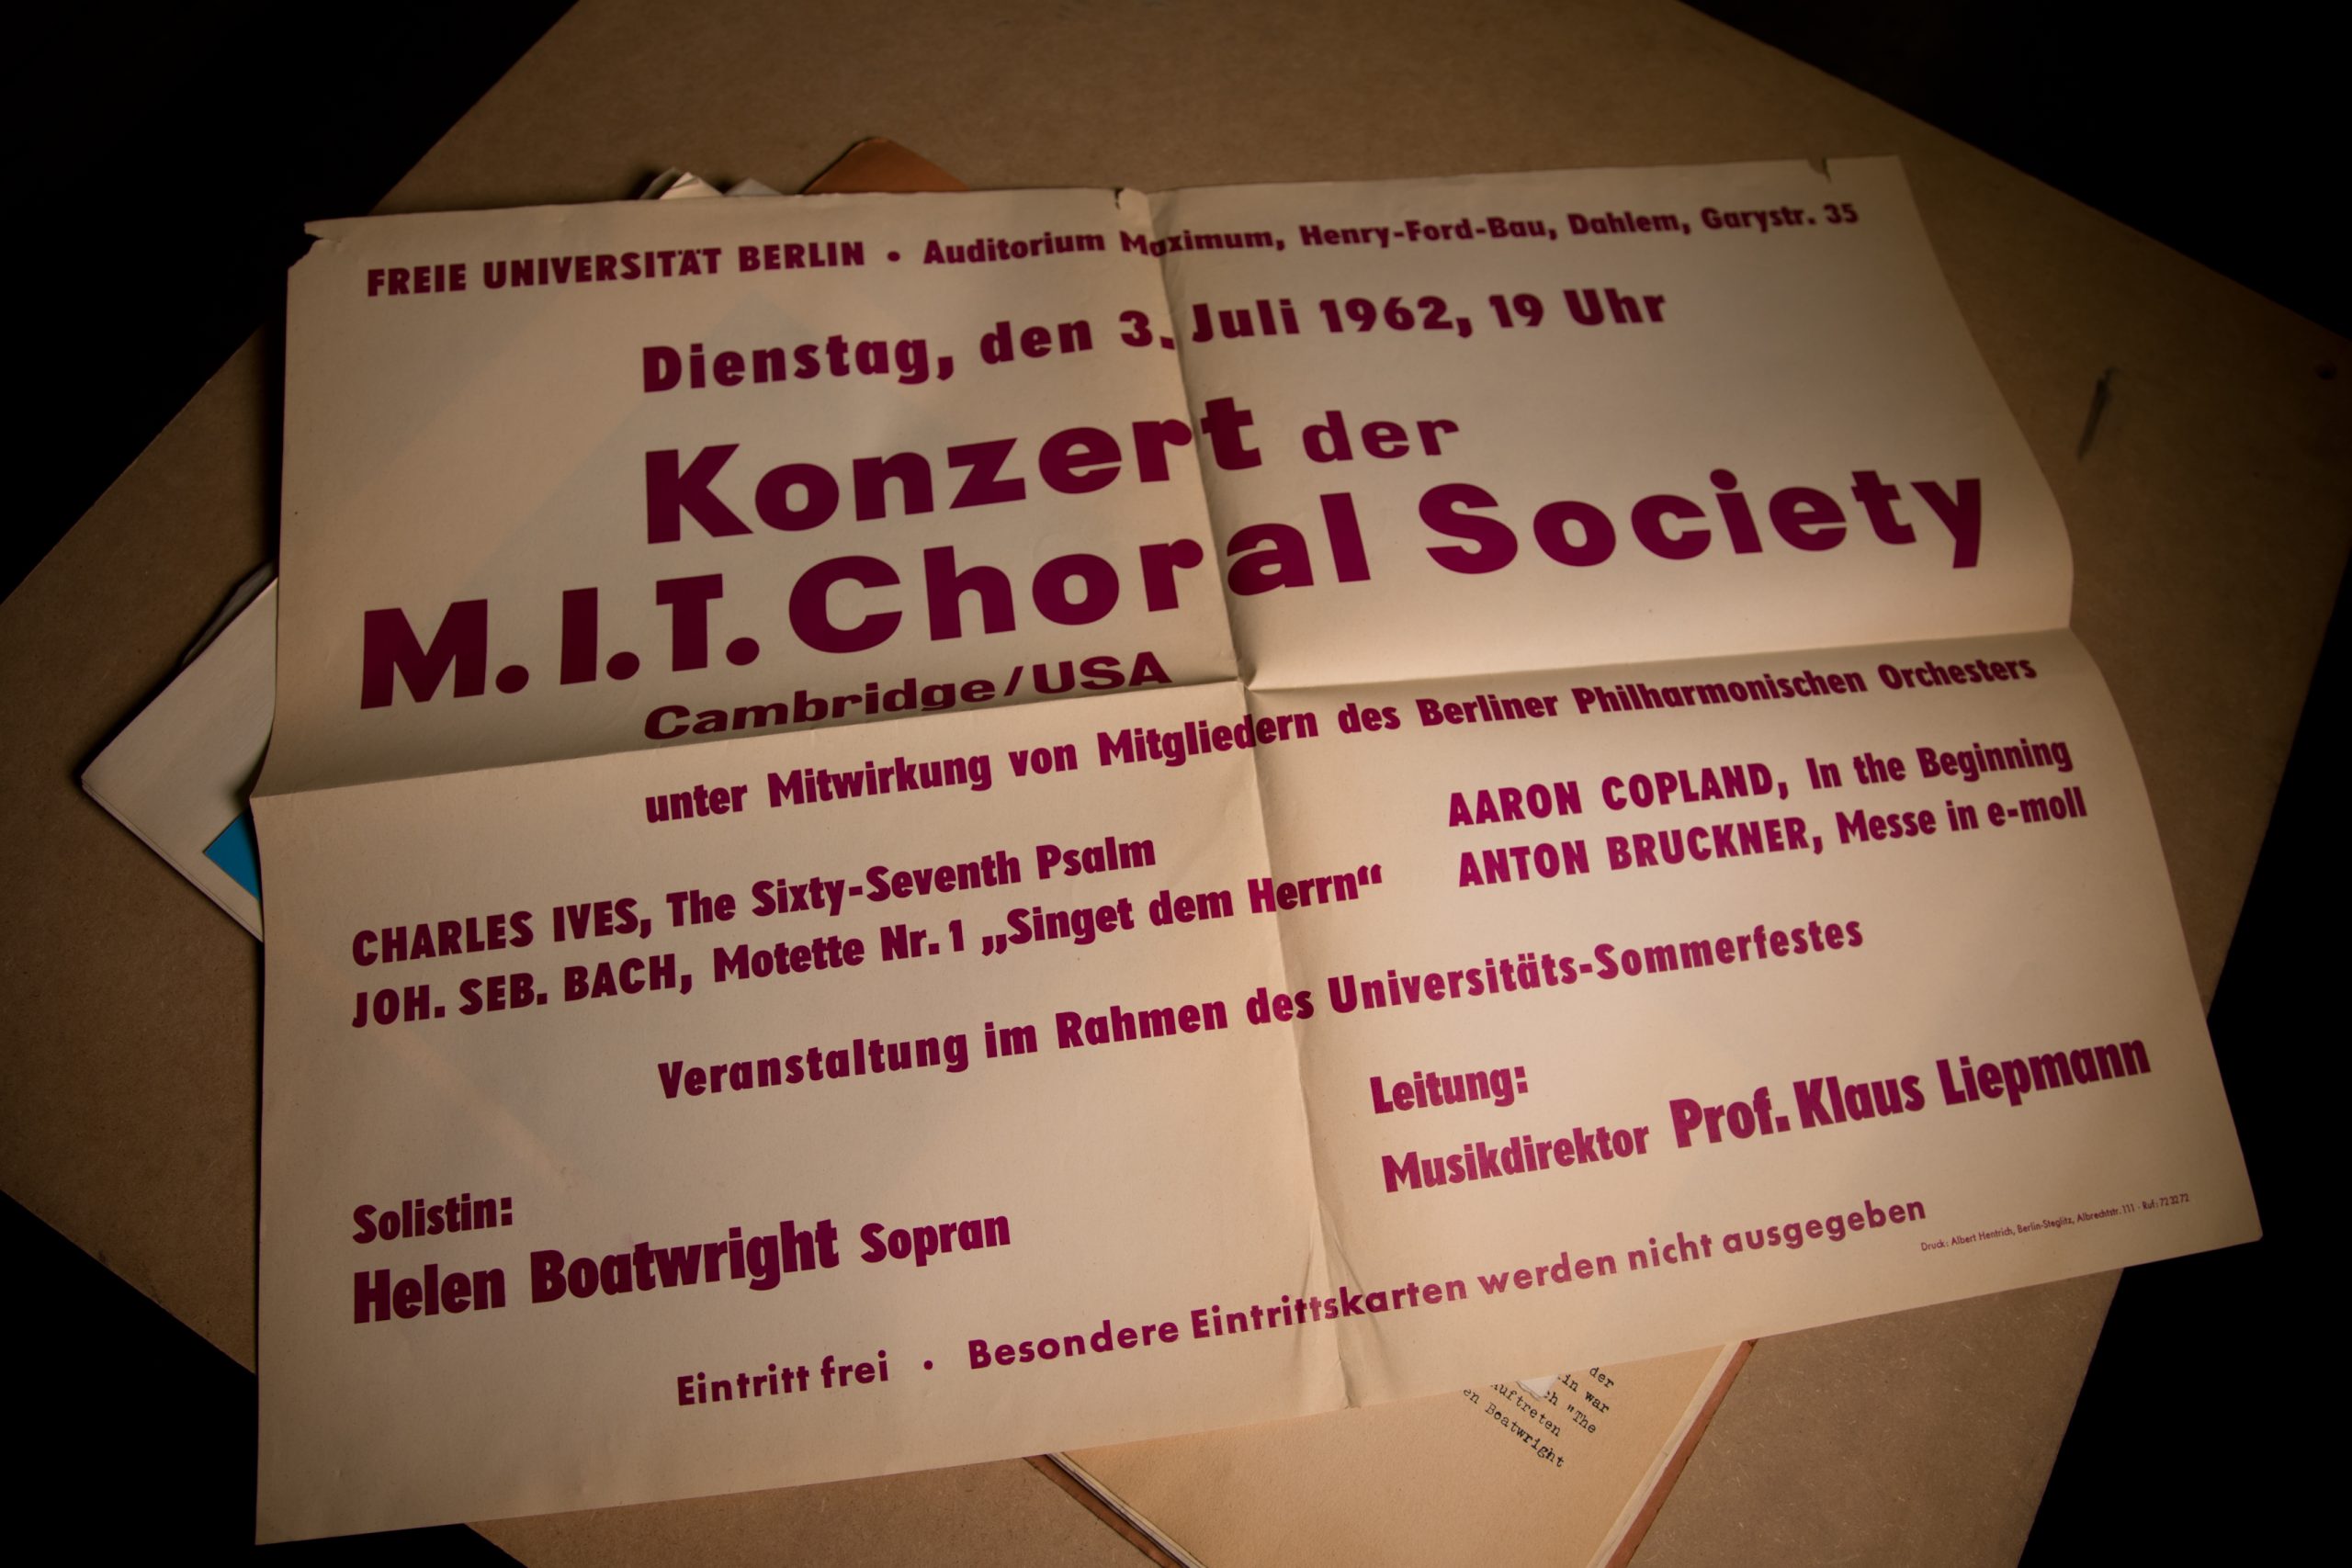 MIT Choral Society concert poster, Freie Universität Berlin, 1962